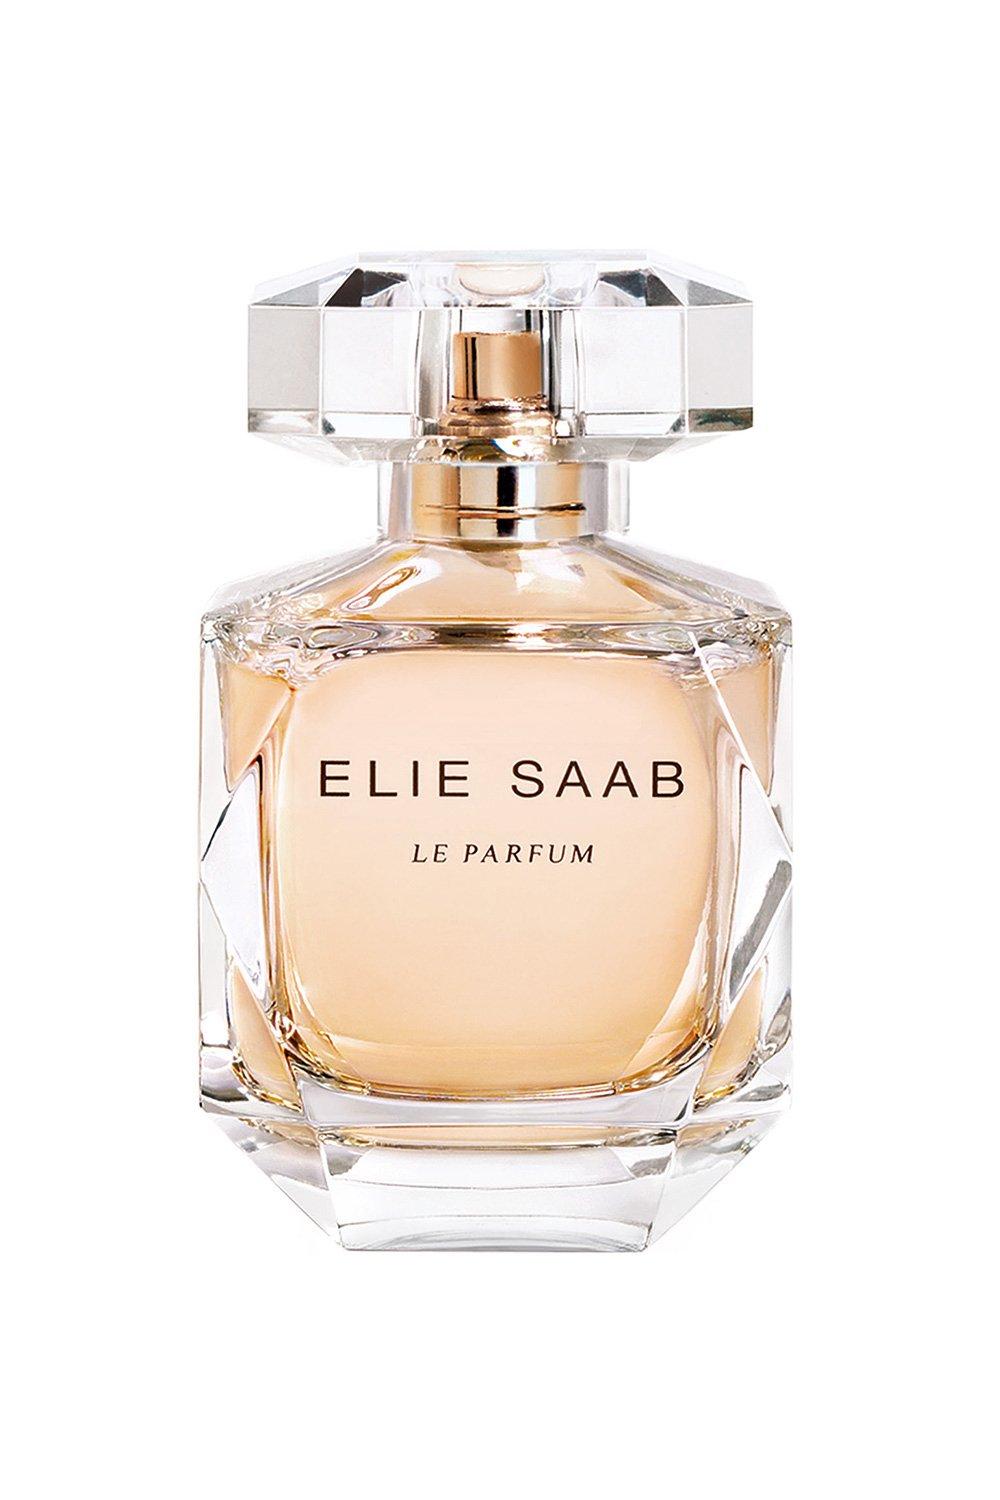 Elie Saab Le Parfum Eau De Parfum